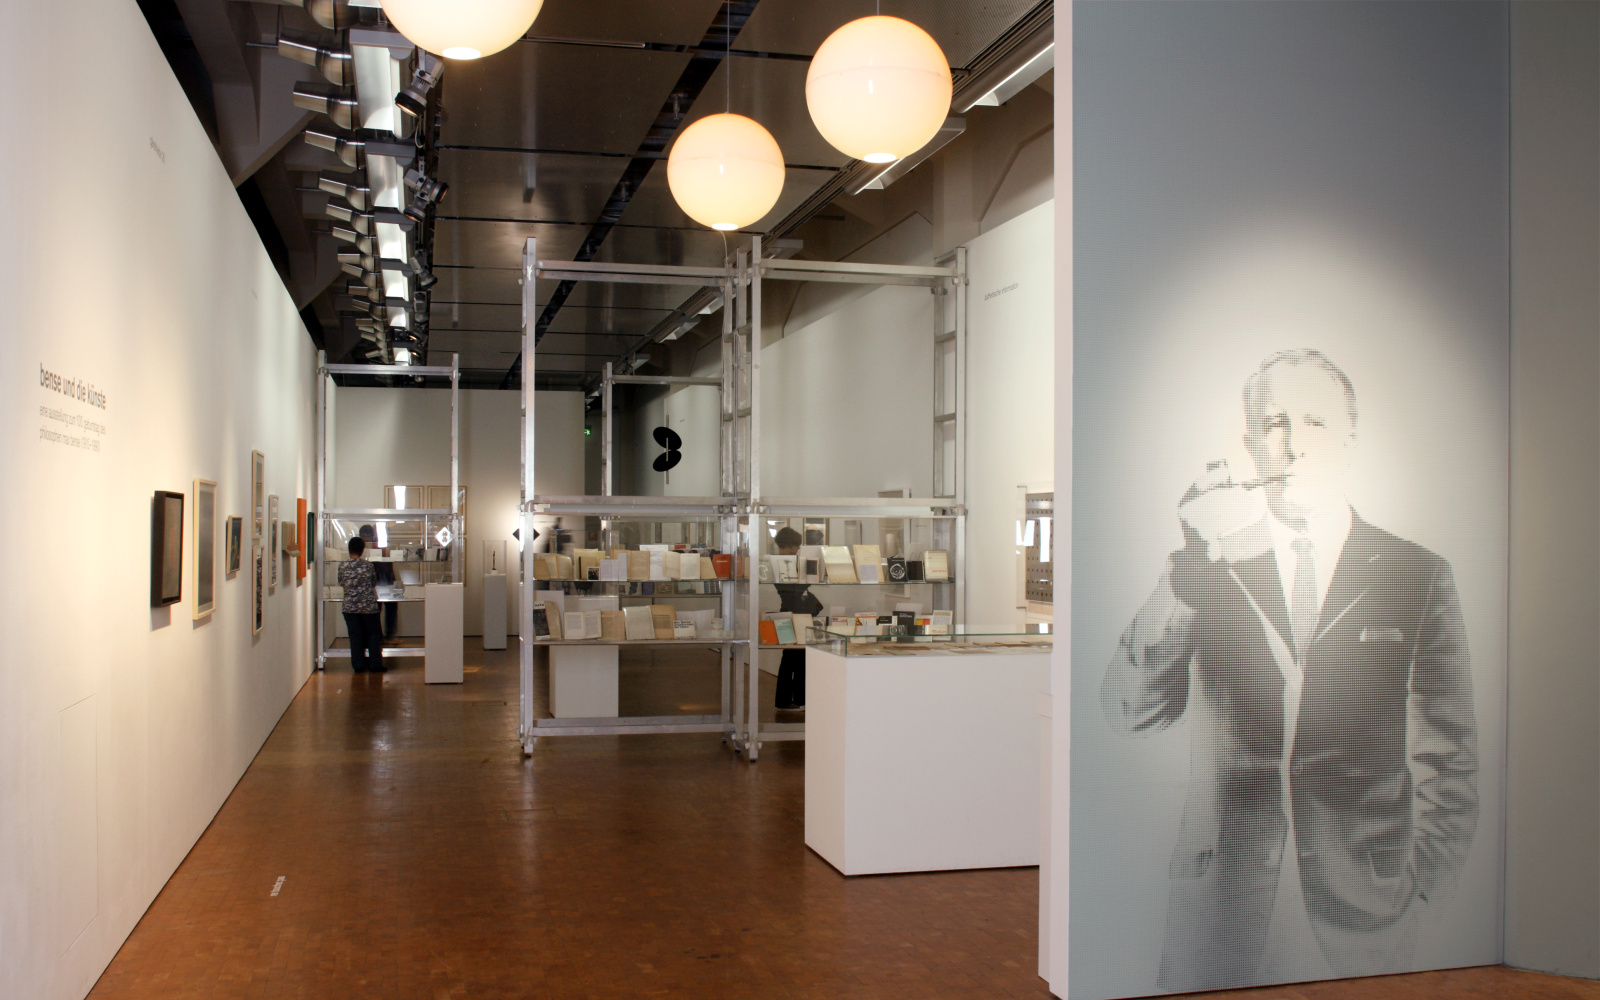 Blick in die Ausstellung »Bense und die Künste». Auf der rechten Seite ein Porträt von Max Bense.